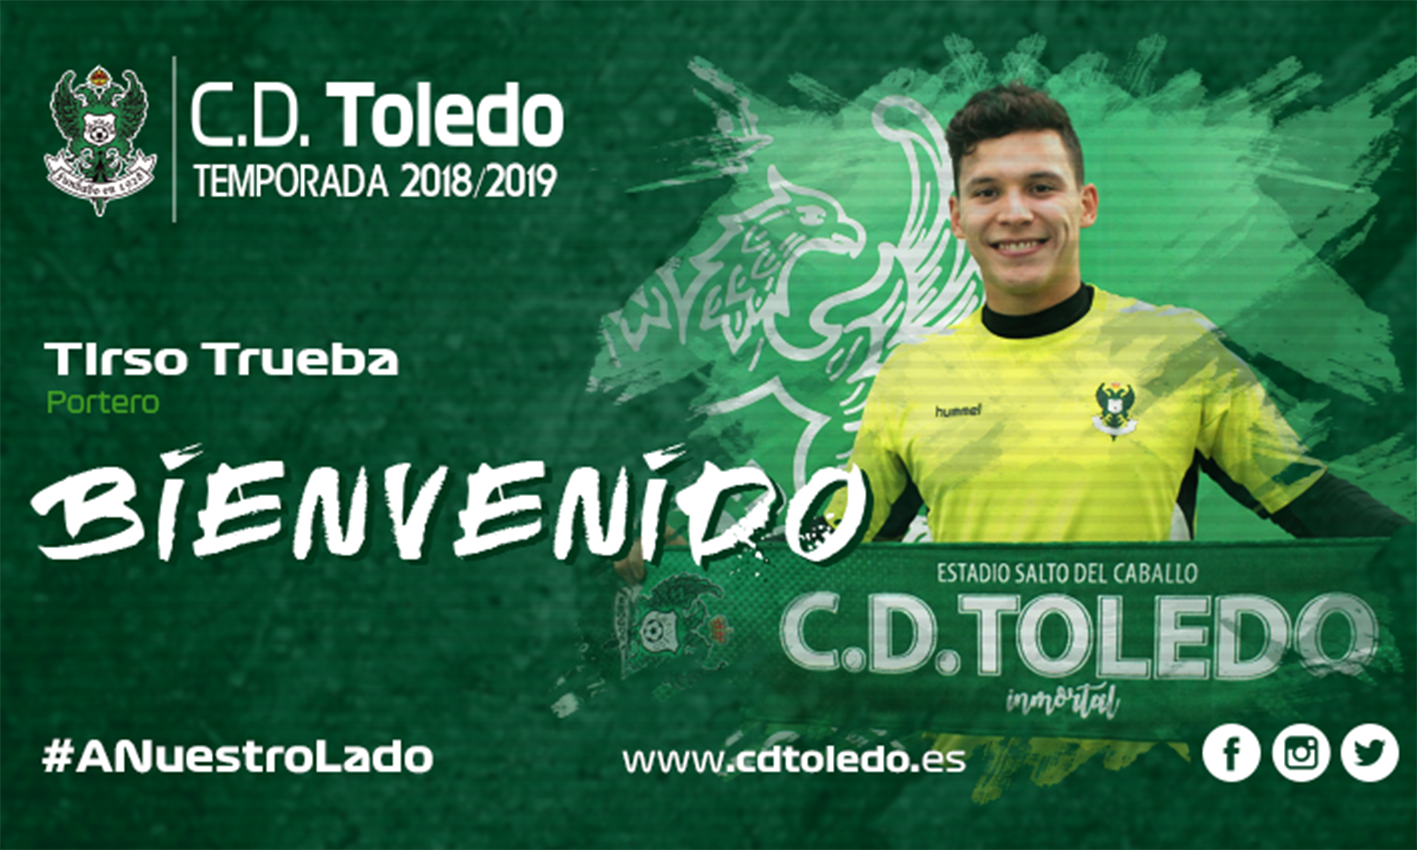 Tirso Trueba, de 22 años, un portero mexicano para el CD Toledo